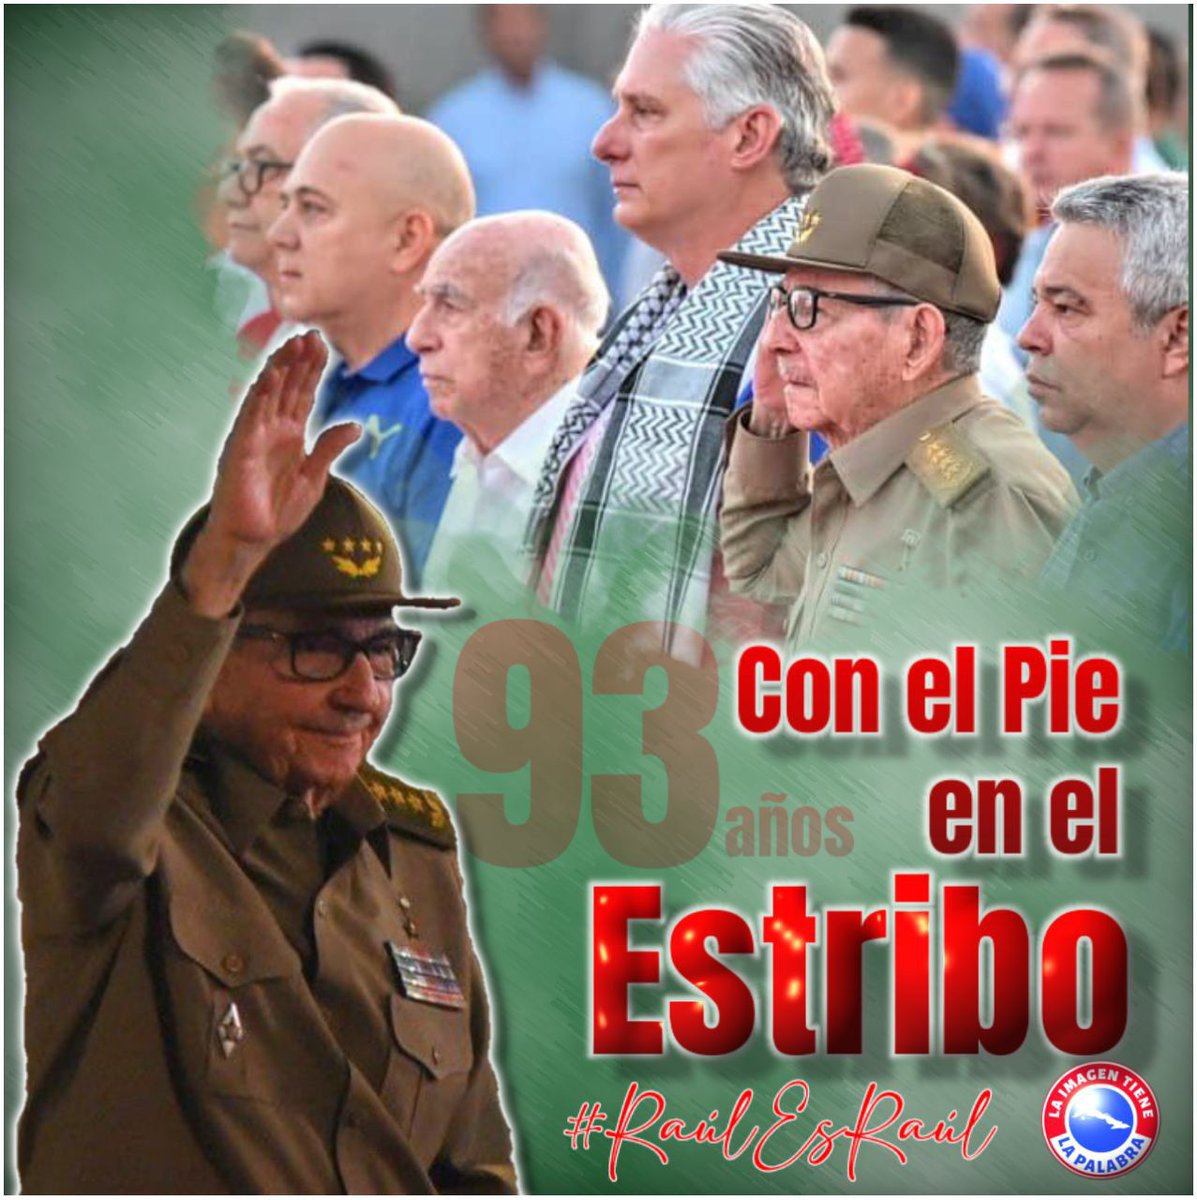 El próximo 3 de junio el General de Ejército Raúl Castro Ruz estará cumpliendo 93 años. 

Toda una vida entregada a la causa de la Revolución. 
#RaulEsRaul